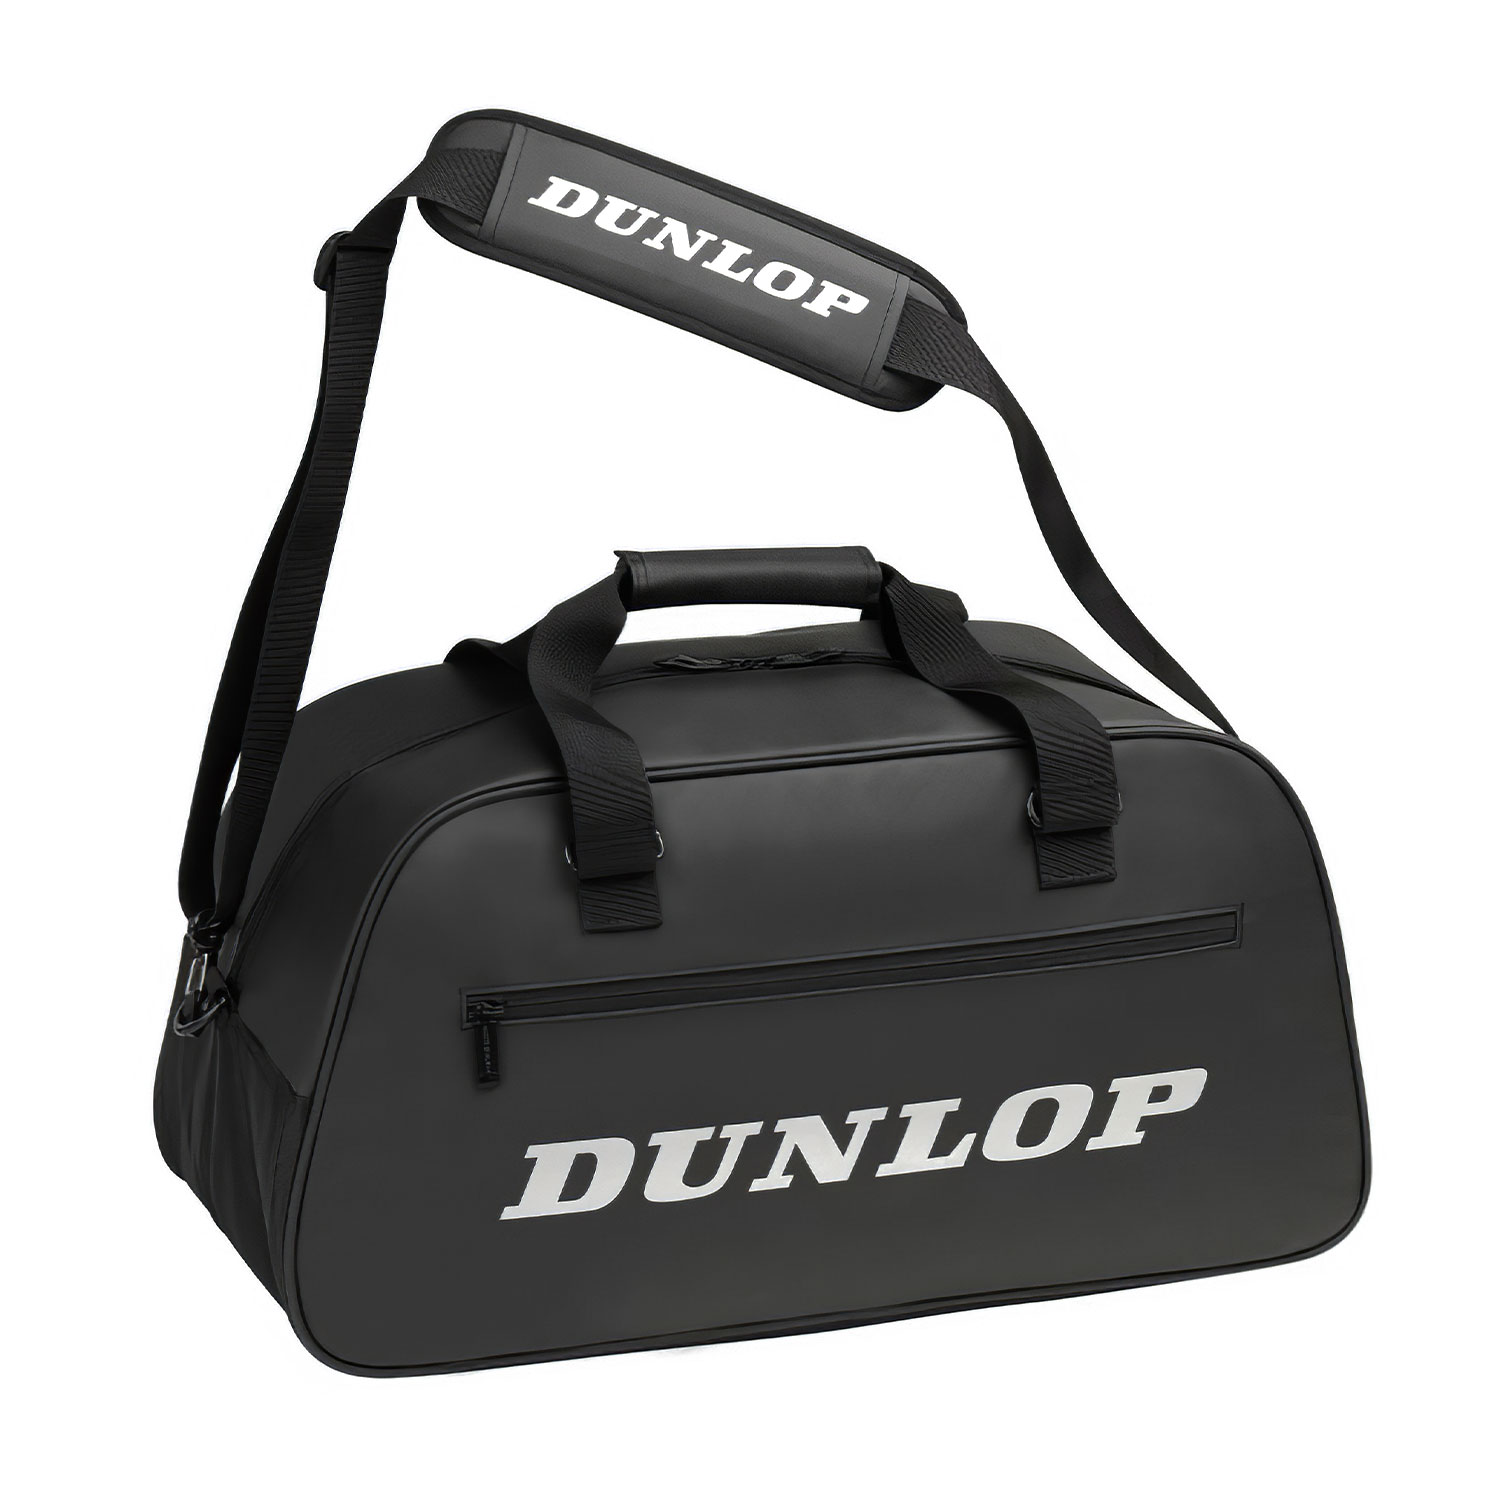 Dunlop Pro Borsa - Black